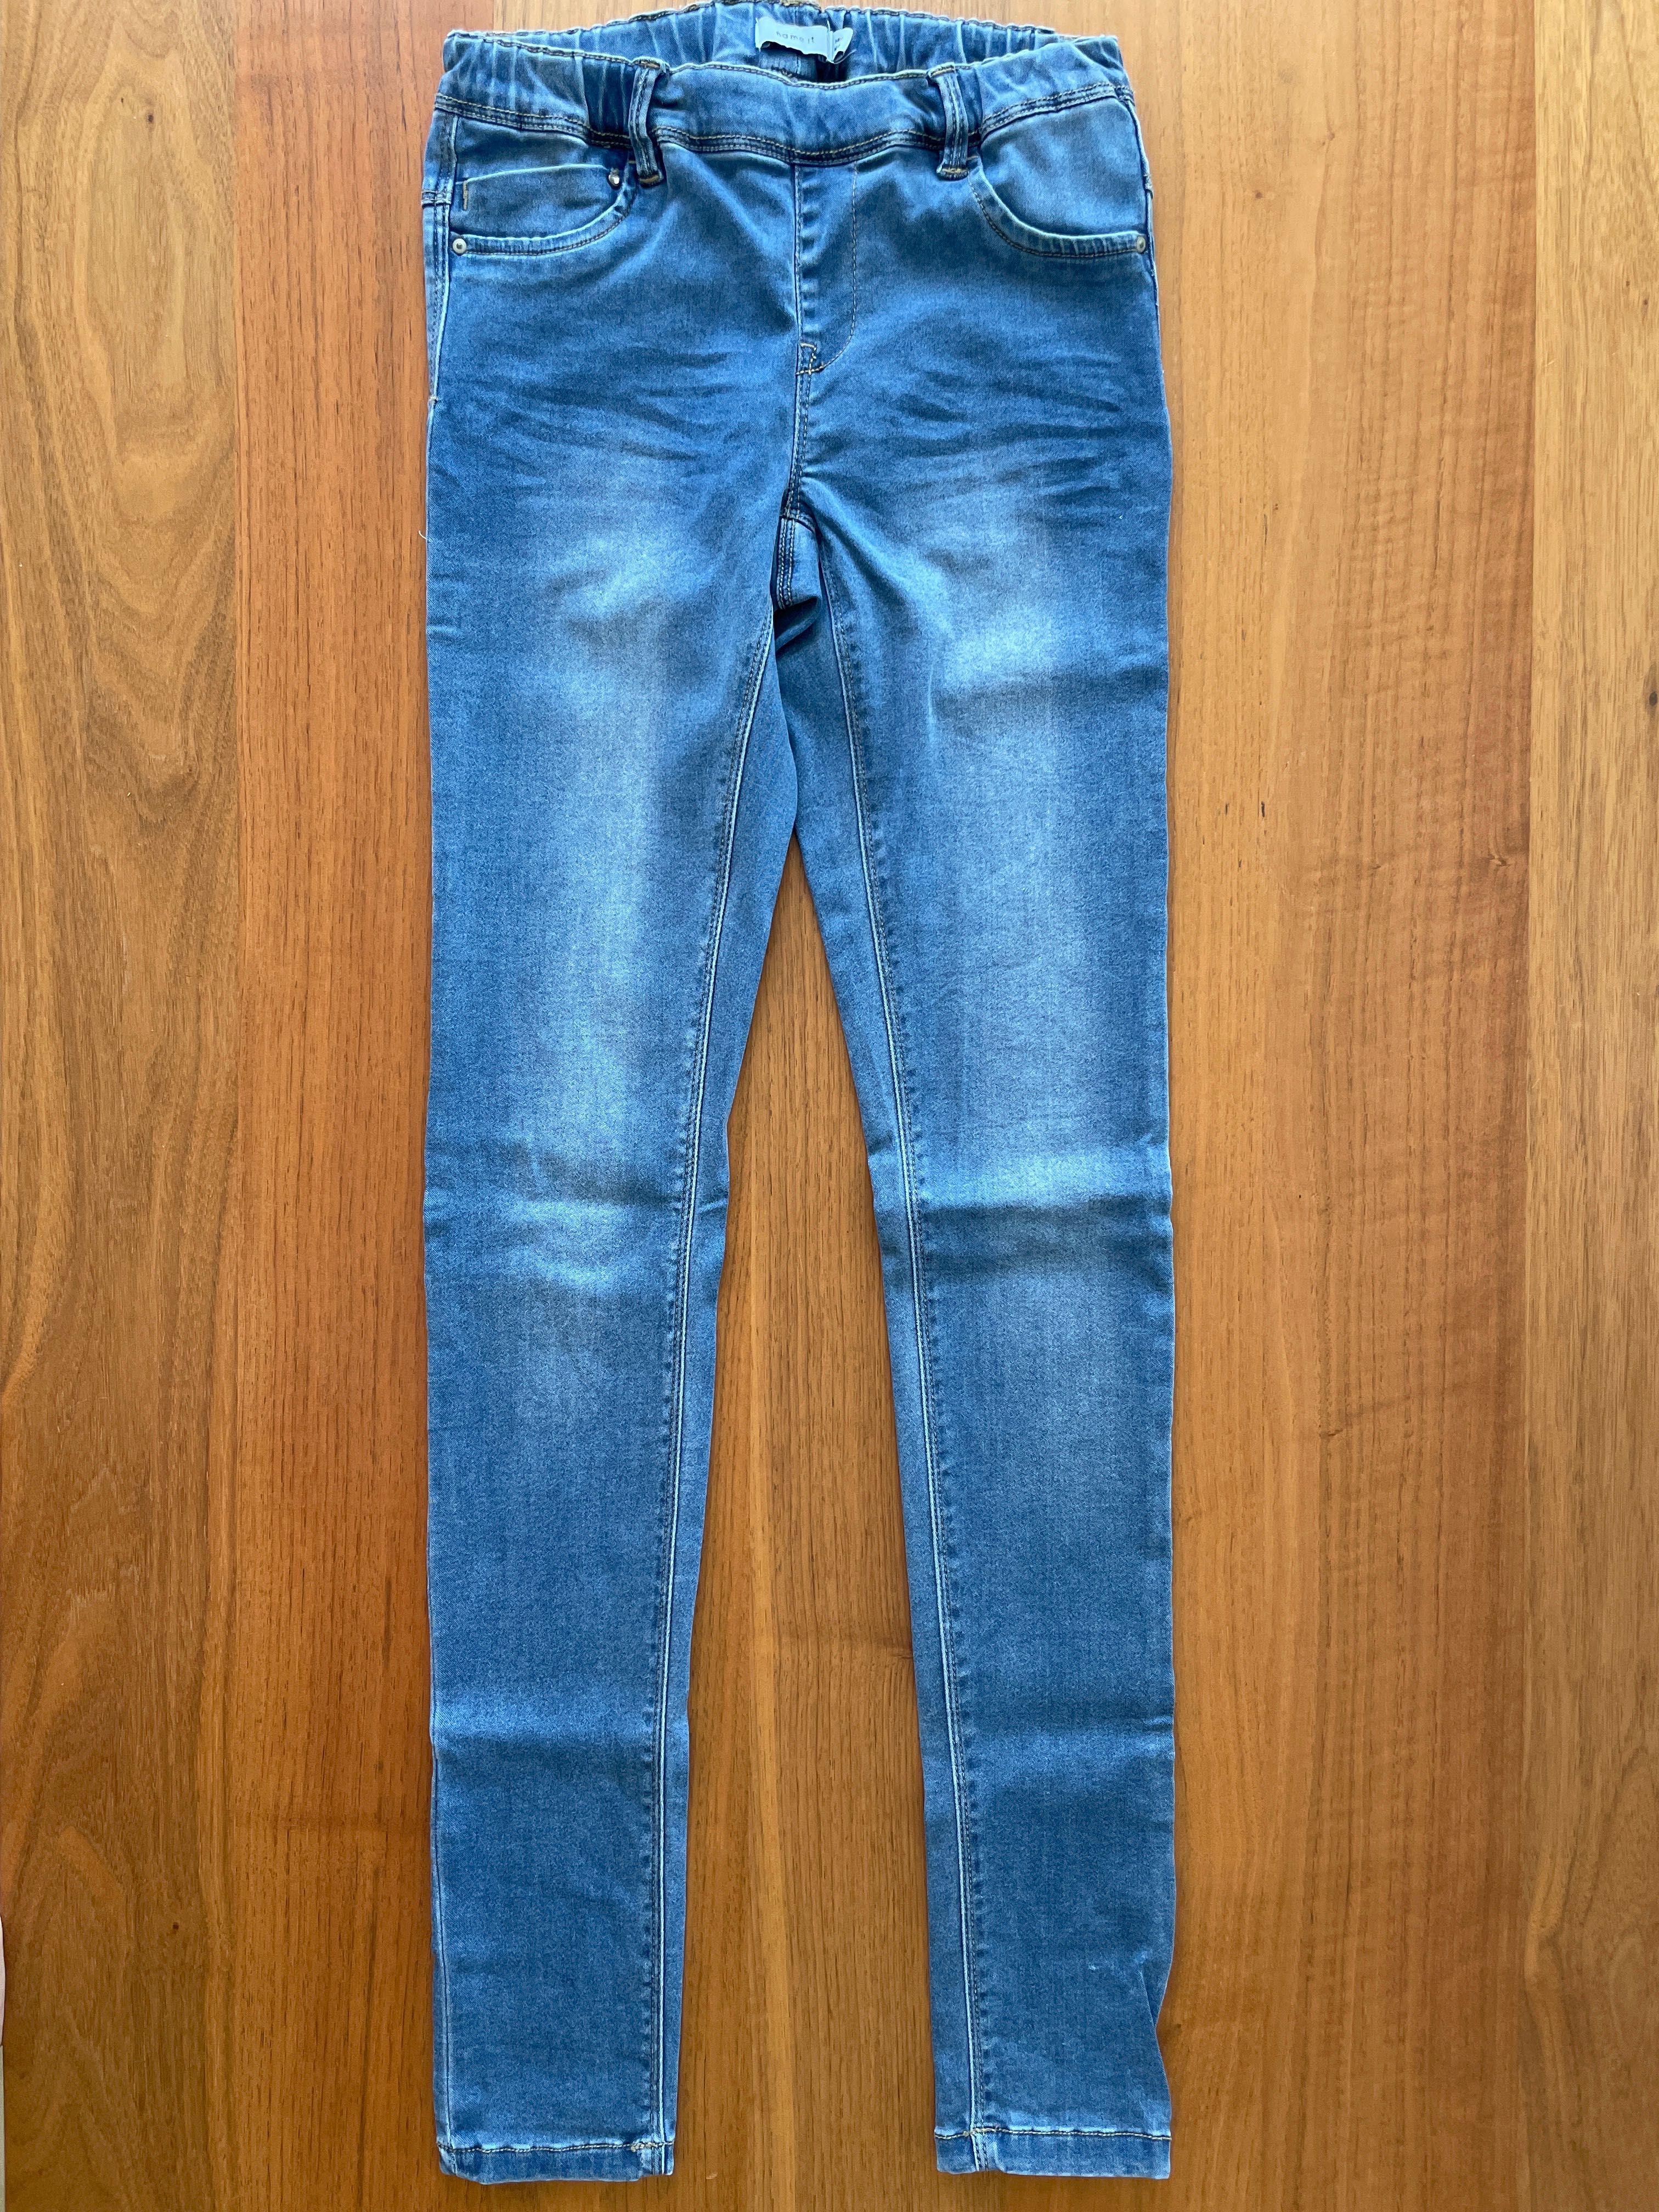 Jeansy elastyczne miękkie marki Name It rozm. 164 / 14 lat